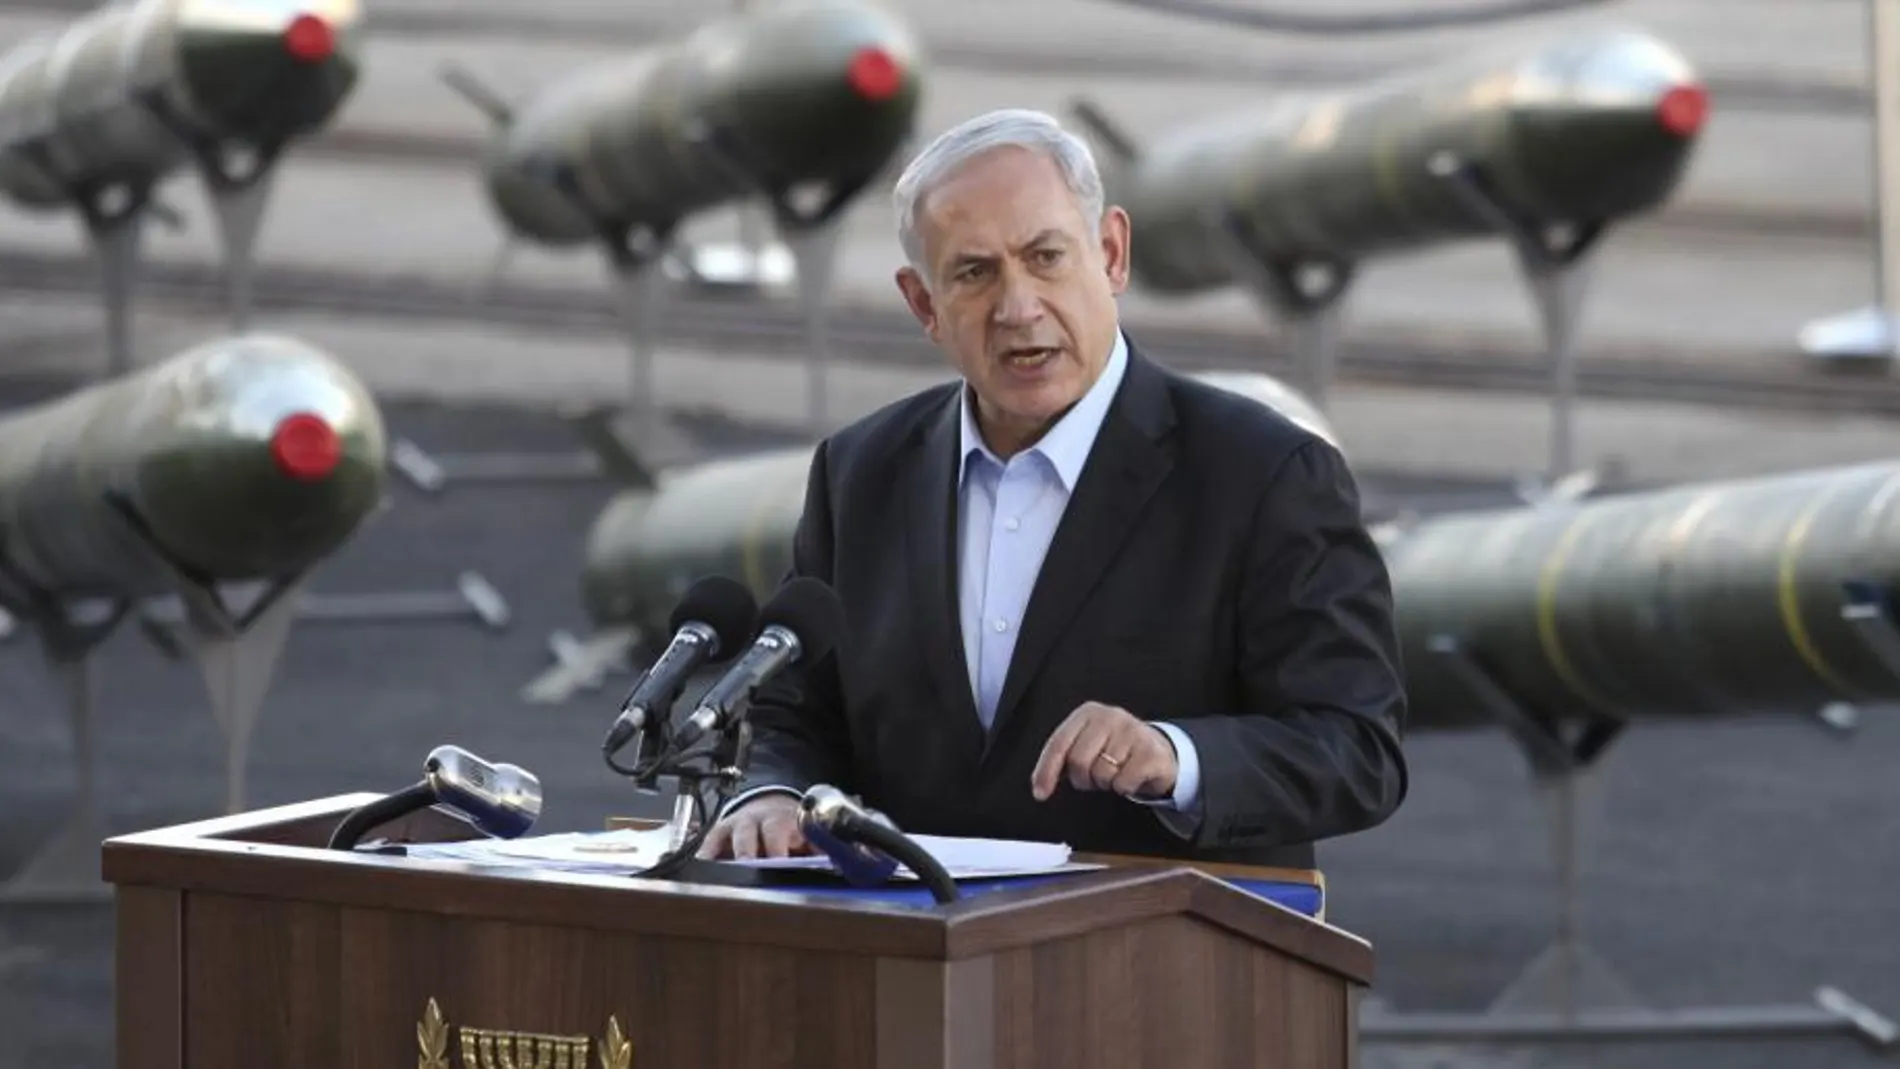 El primer ministro de Israel Benjamin Netanyahu ofrece una rueda de prensa junto a las armas encontradas en el barco Klos-C con bandera de conveniencia panameña apresado por Israel el pasado miércoles